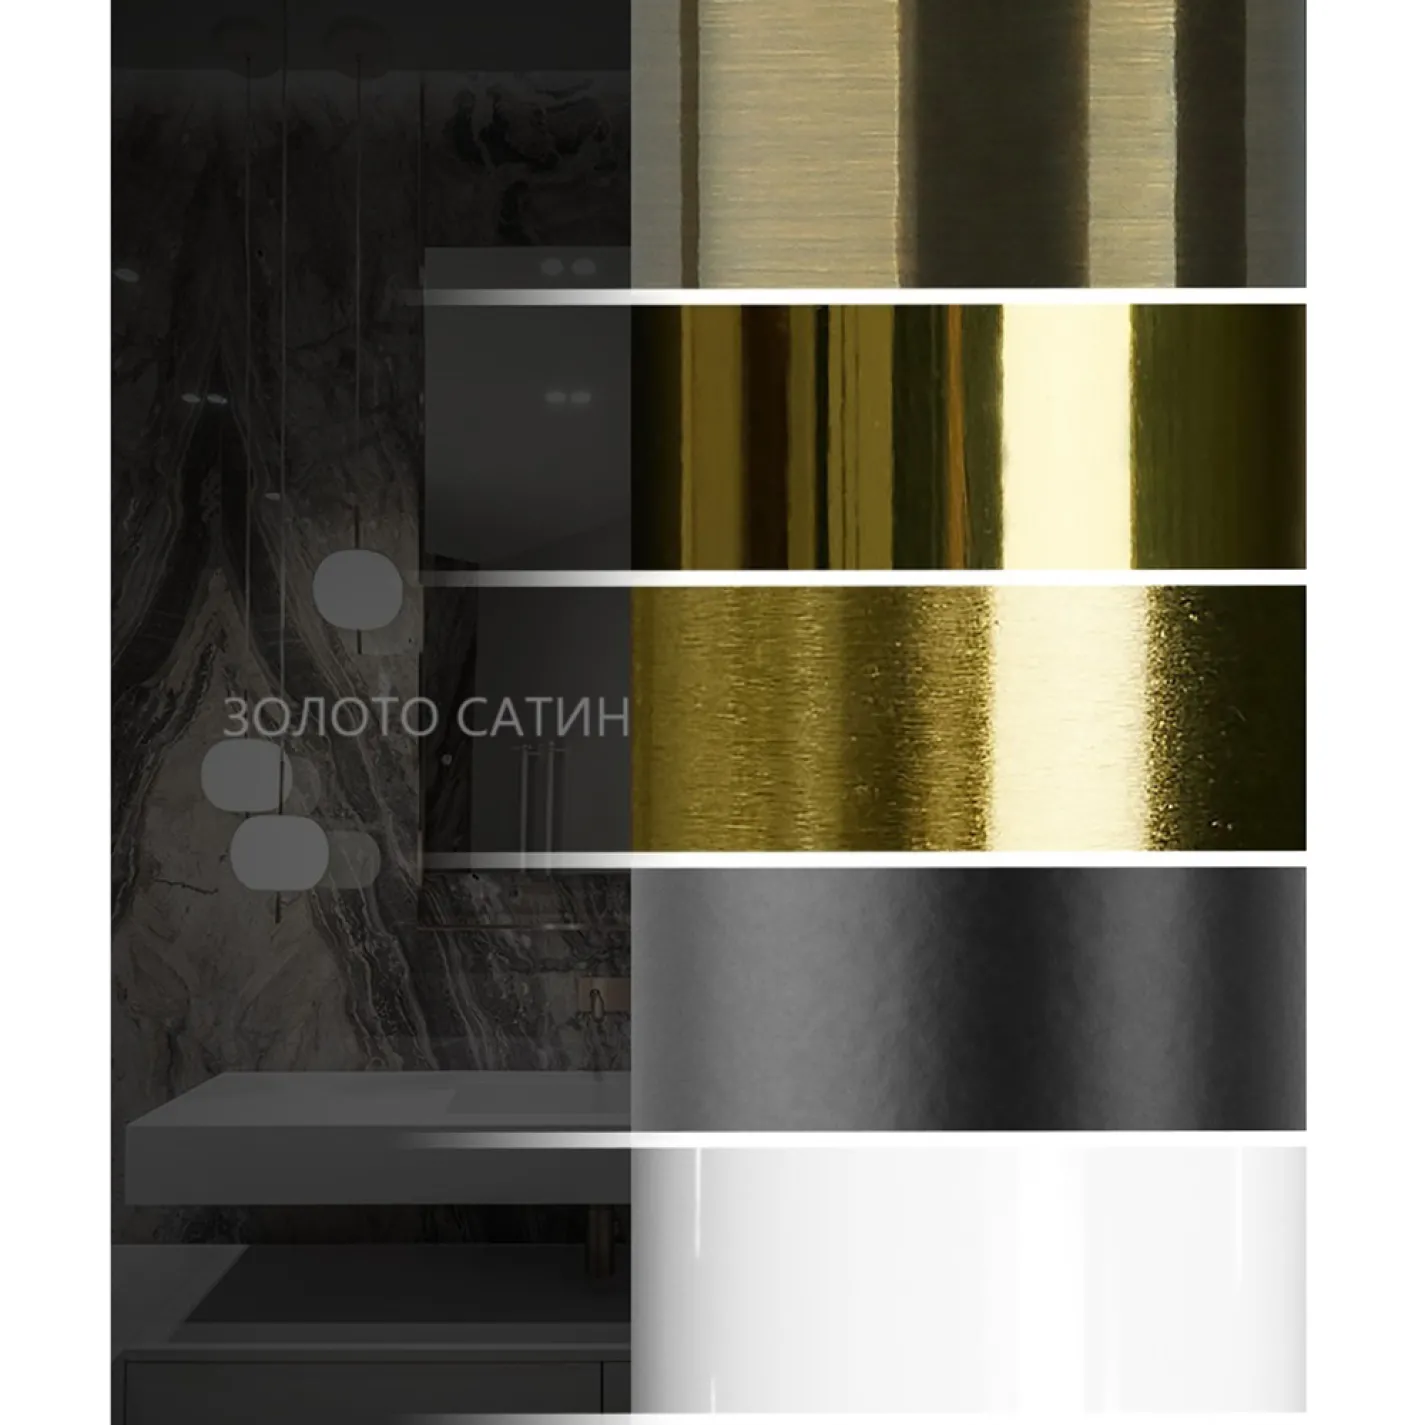 Електрична рушникосушка Mario Преміум Класік-I 1100х500/80 TR К, золото сатин - Фото 2